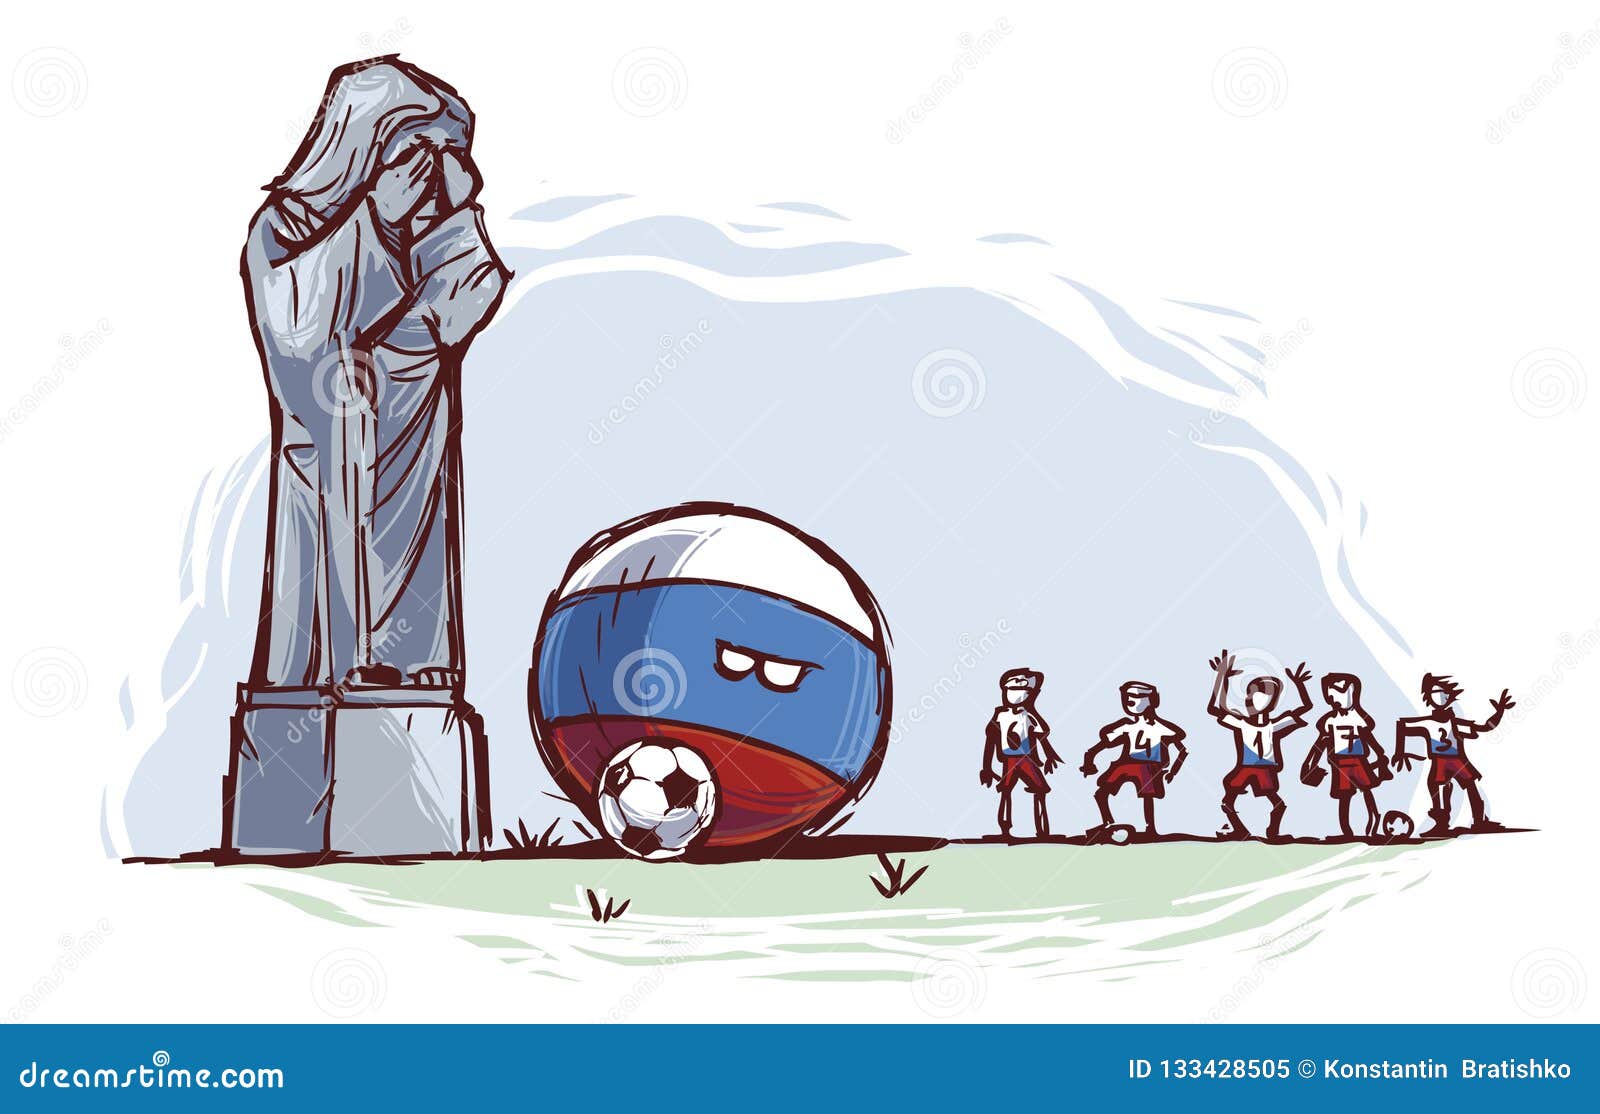 Rússia Futebol Brasil ⚽ (@RussiaFutebolBR) / X